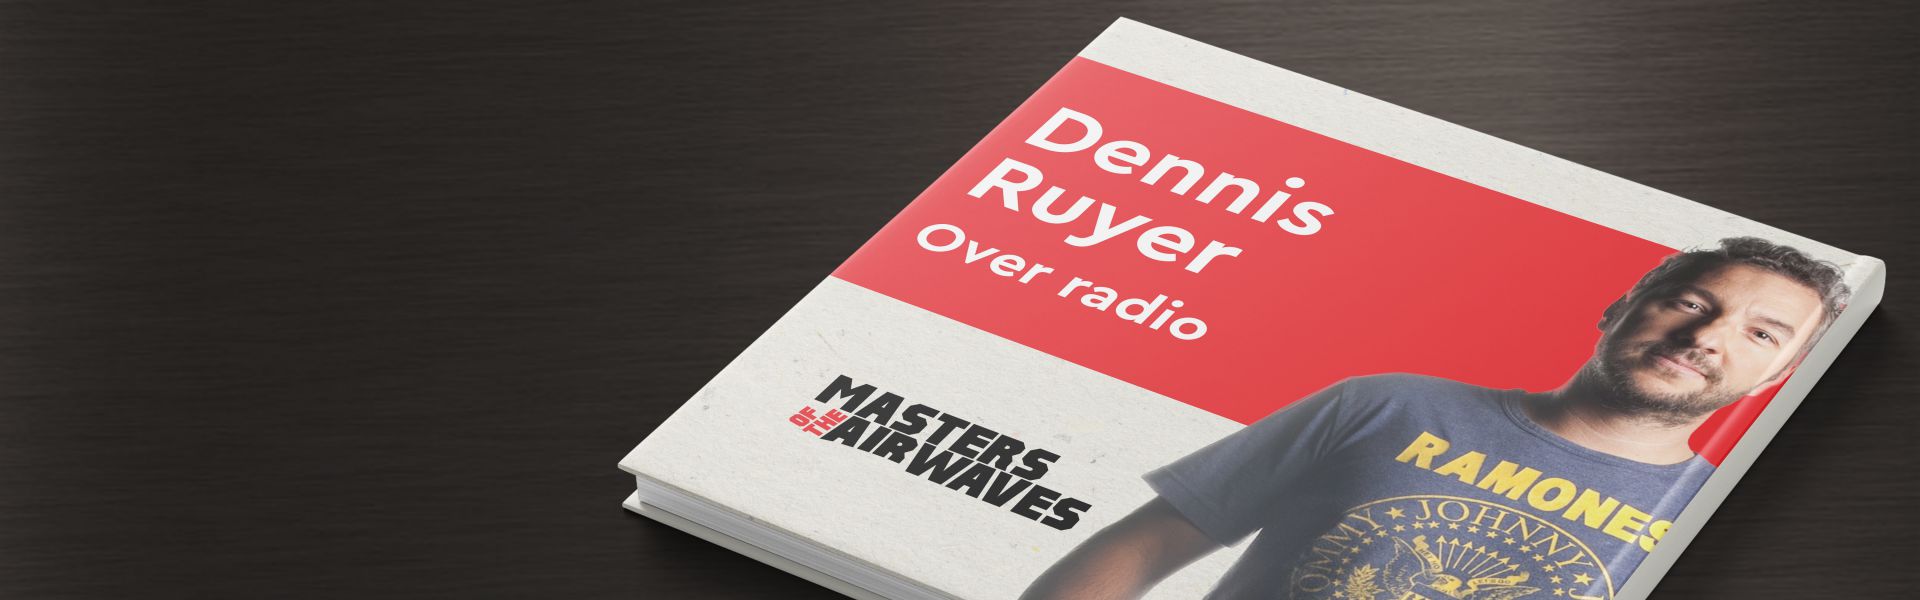 Dennis Ruyer over Radio